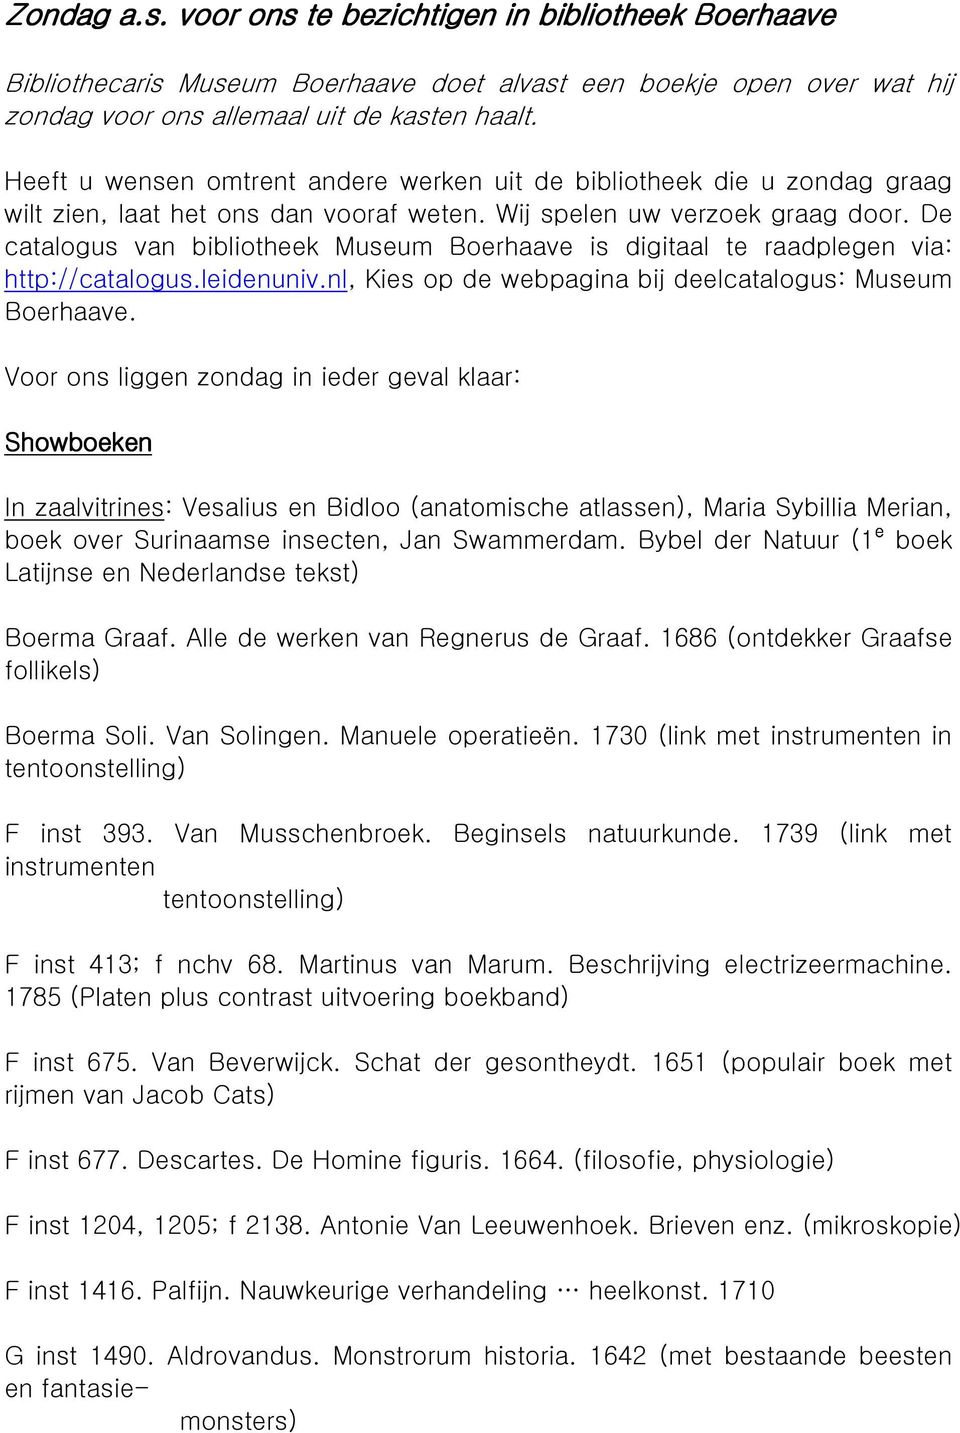 De catalogus van bibliotheek Museum Boerhaave is digitaal te raadplegen via: http://catalogus.leidenuniv.nl, Kies op de webpagina bij deelcatalogus: Museum Boerhaave.